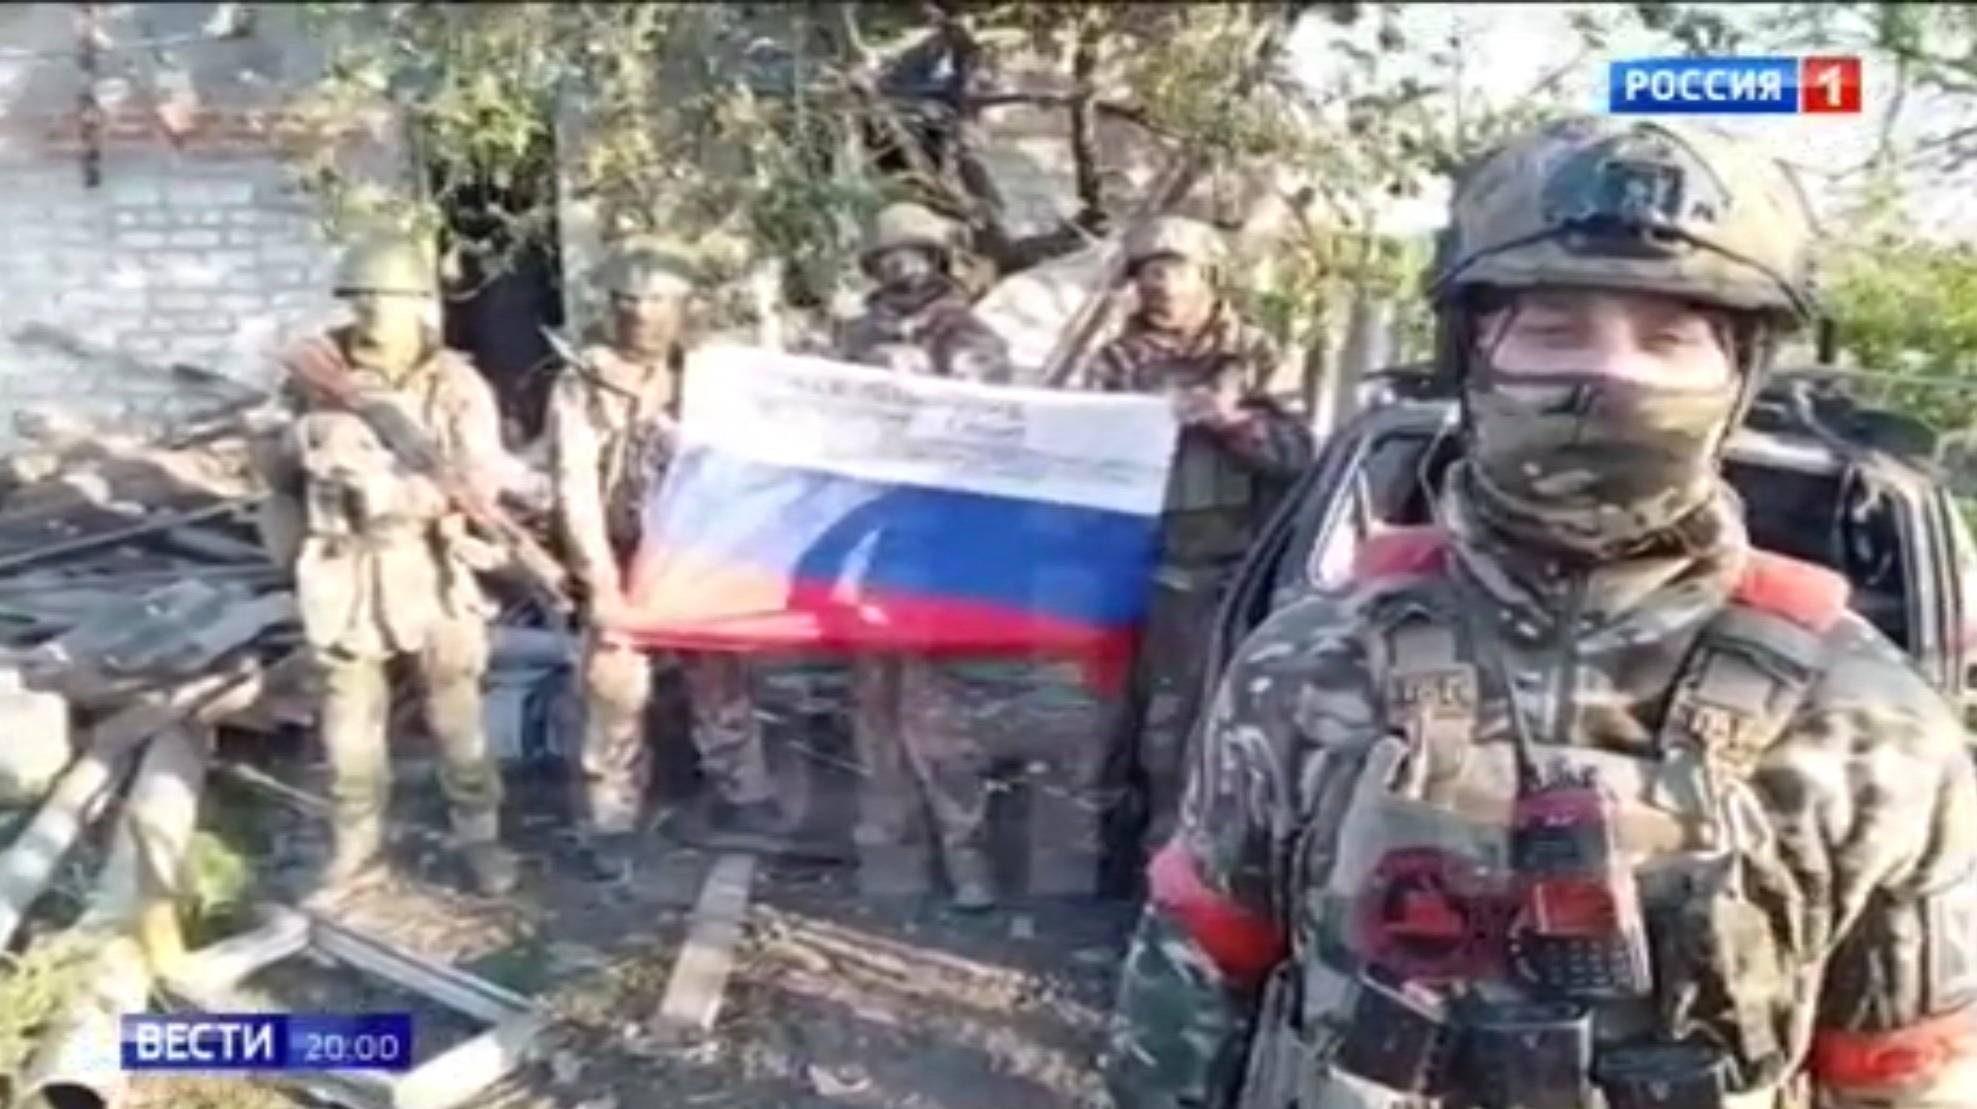 Żołnierze pozują z rosyjską flagą